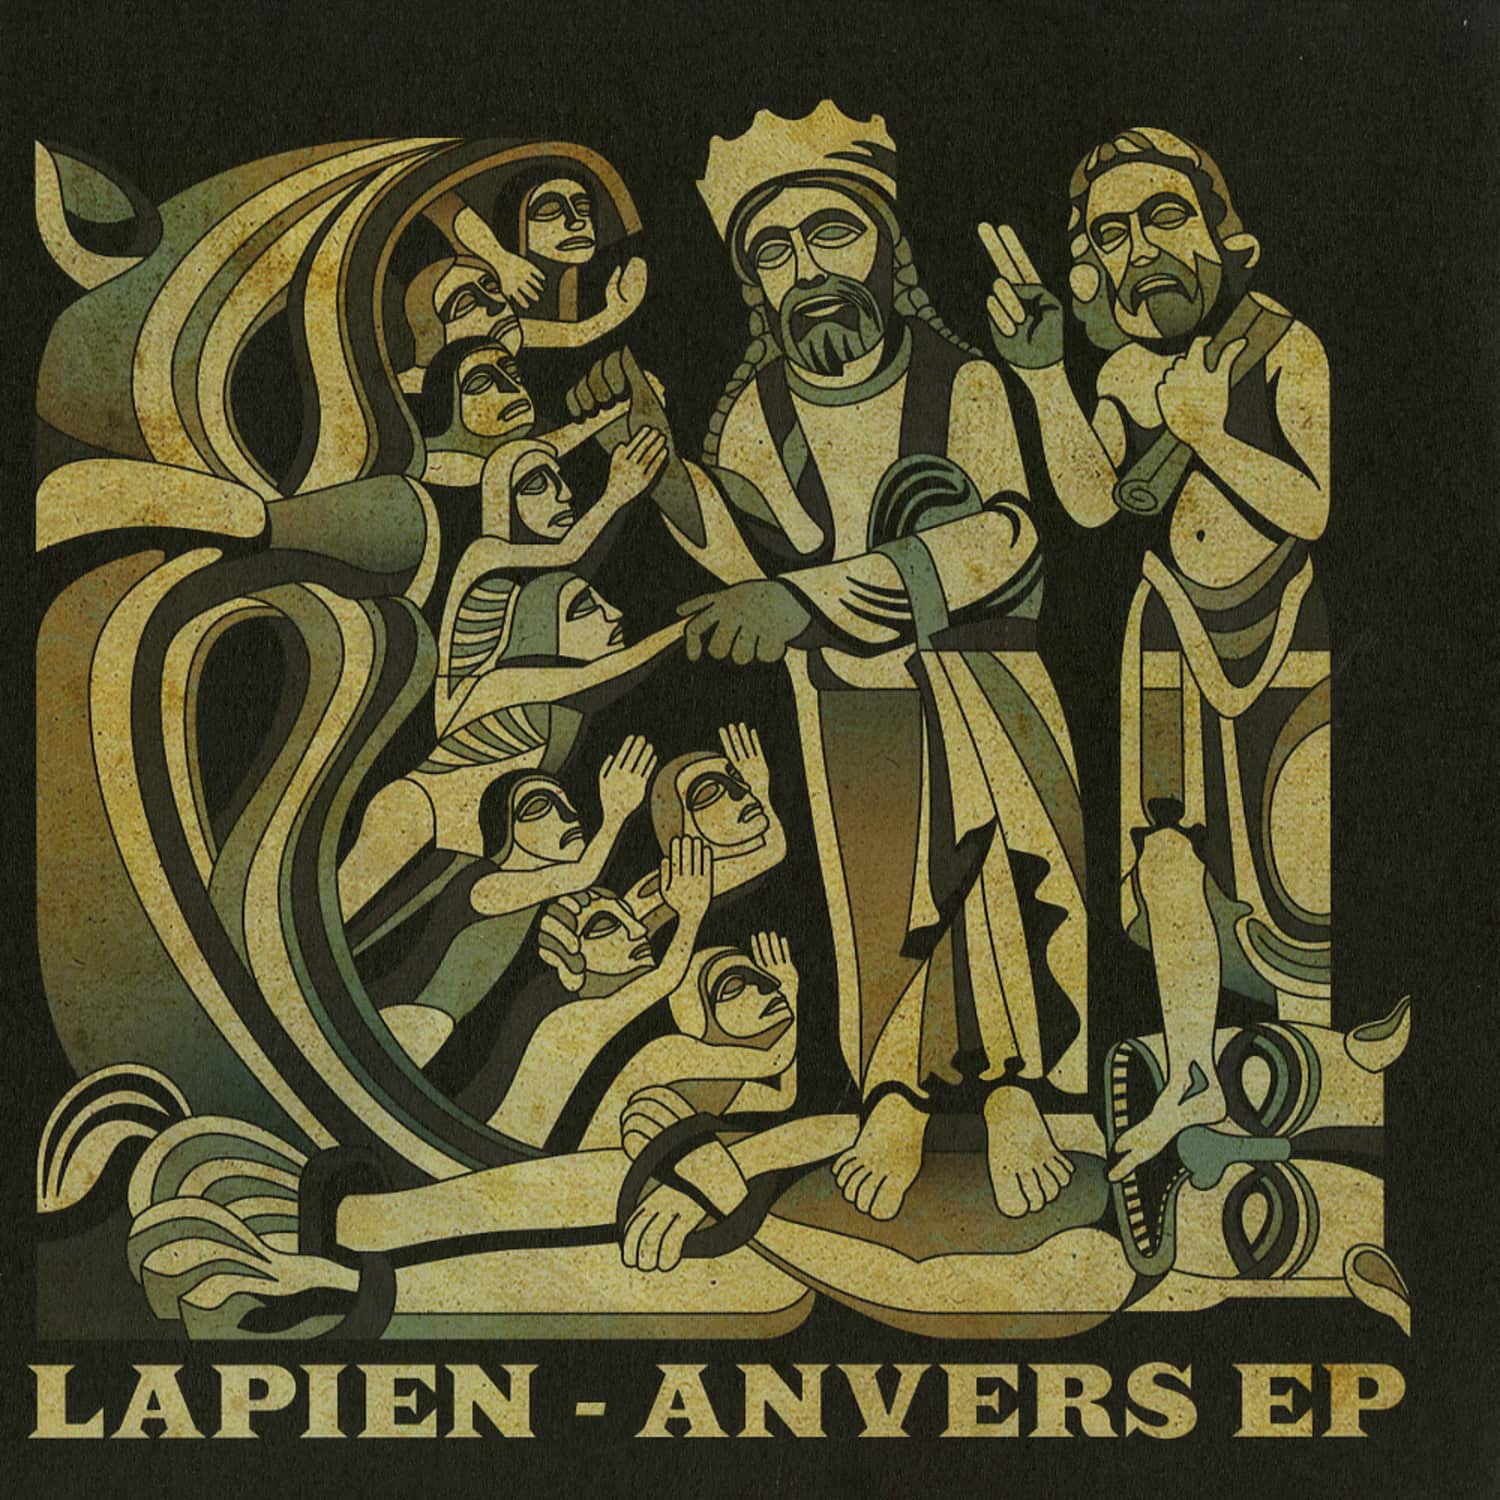 Lapien - ANVERS EP